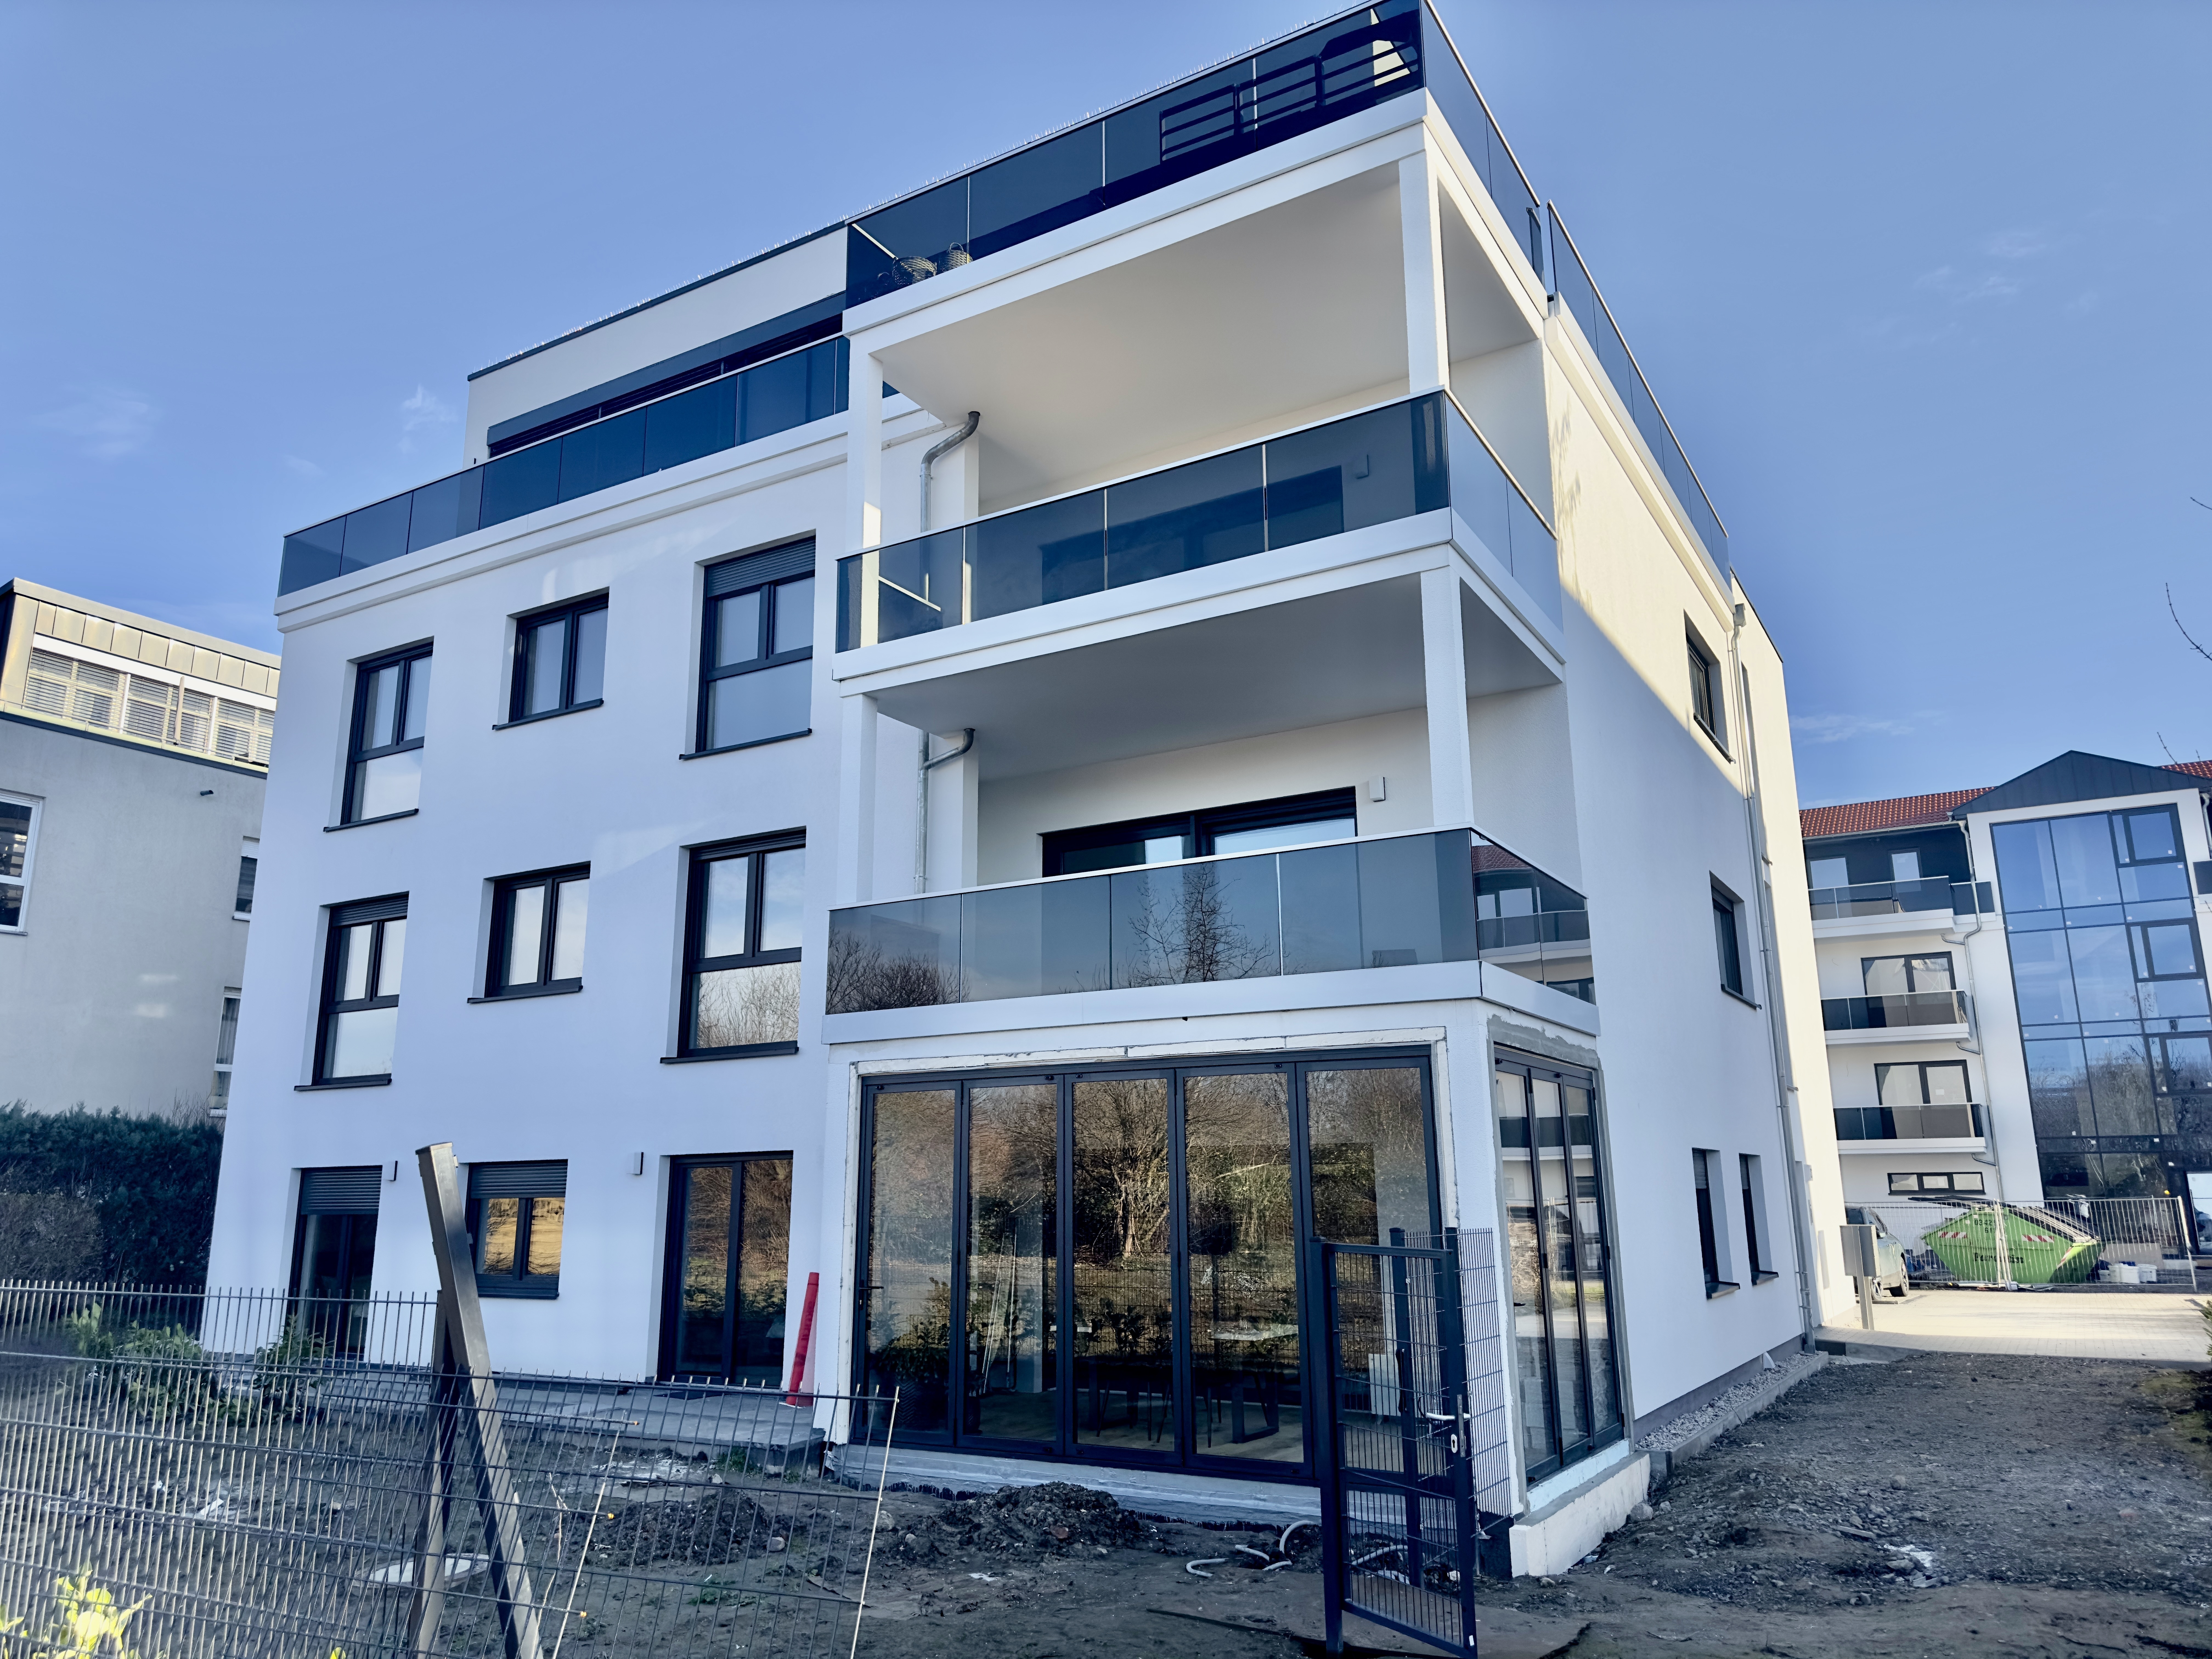 NEU: Gehobene 3-Zimmer Wohnung (Erstbezug) in begehrter Lage mit Balkon, Stellplatz und Aufzug ++ - Hochwertiger Neubau